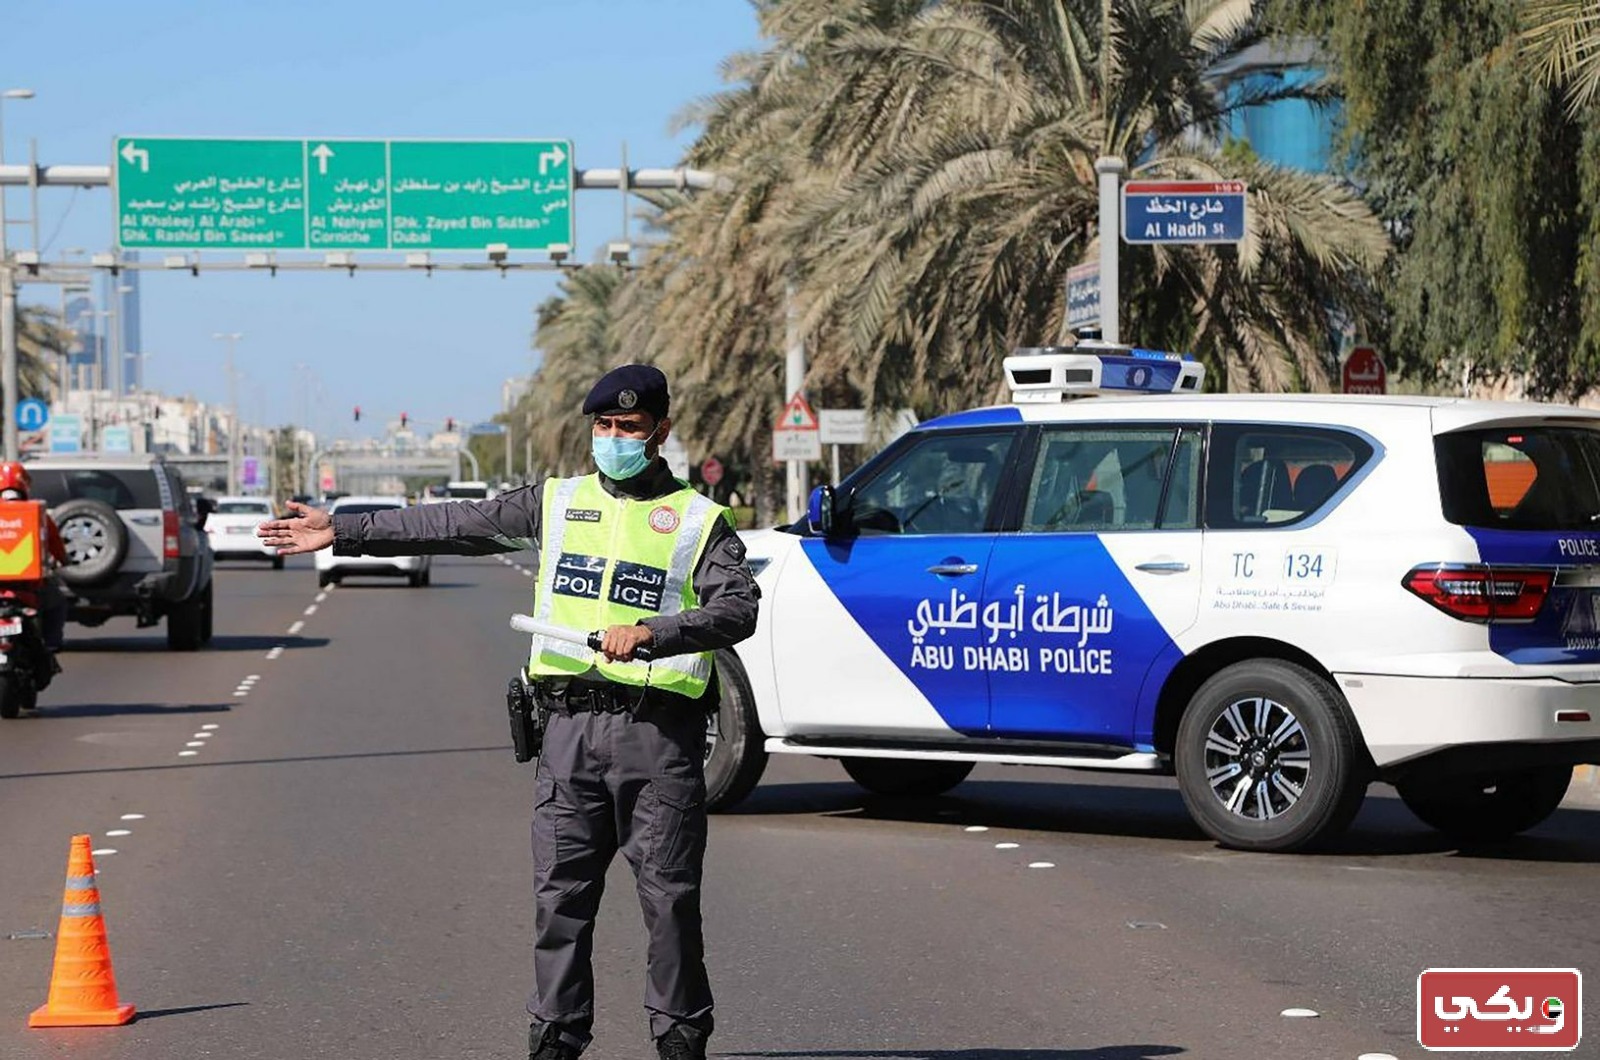 صور لبس شرطة أبوظبي